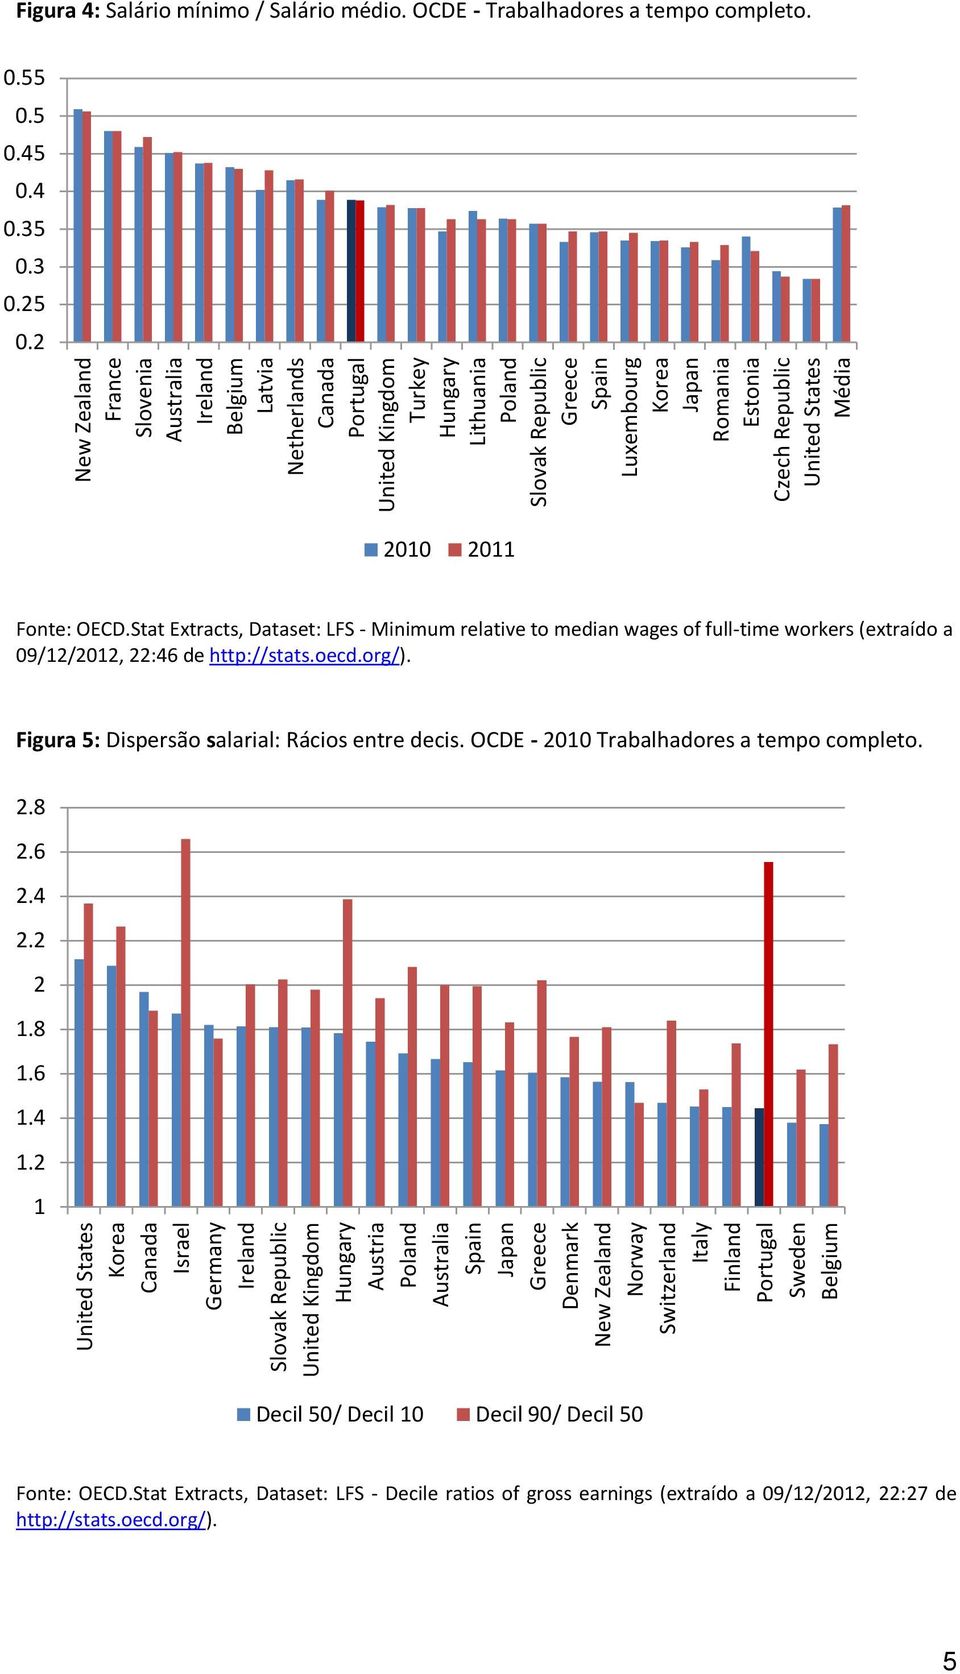 Japan Romania Estonia Czech Republic United States Média Figura 4: Salário mínimo / Salário médio. OCDE - Trabalhadores a tempo completo. 0.55 0.5 0.45 0.4 0.35 0.3 0.25 0.2 2010 2011 Fonte: OECD.